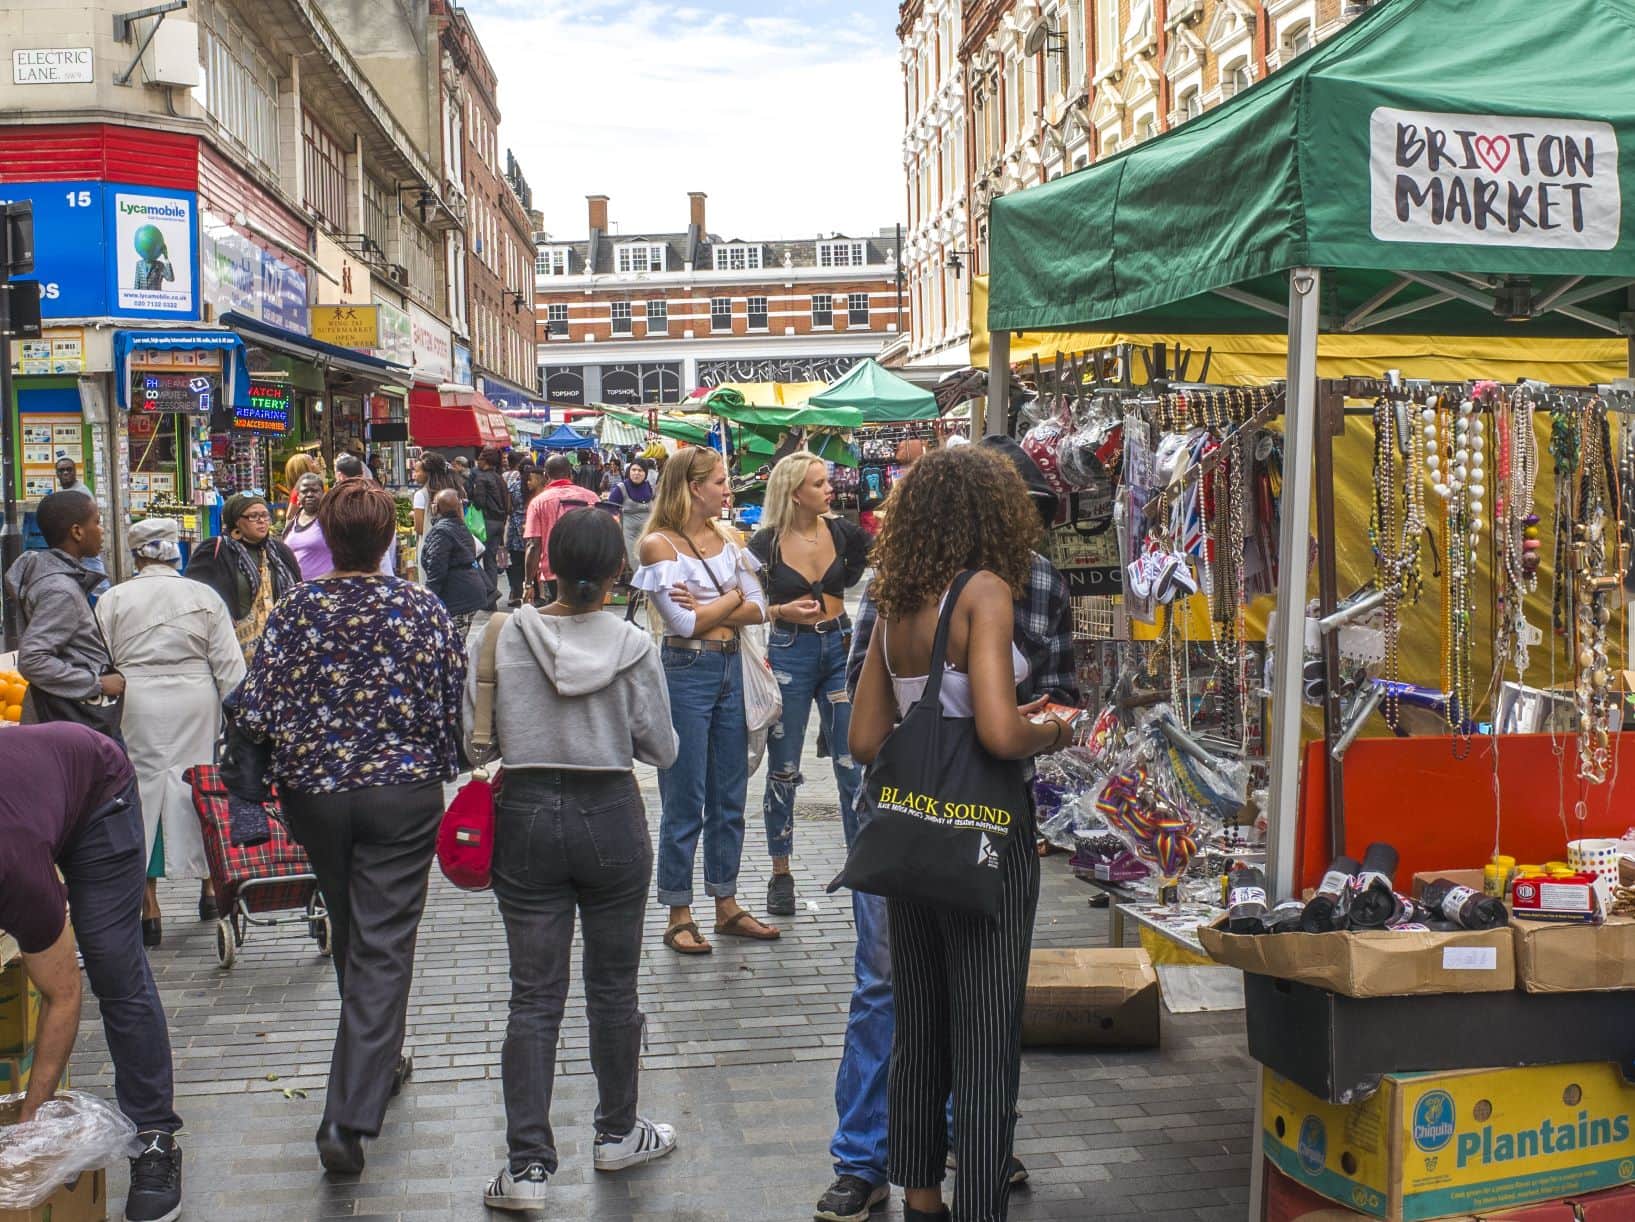 Brixton-Market in London